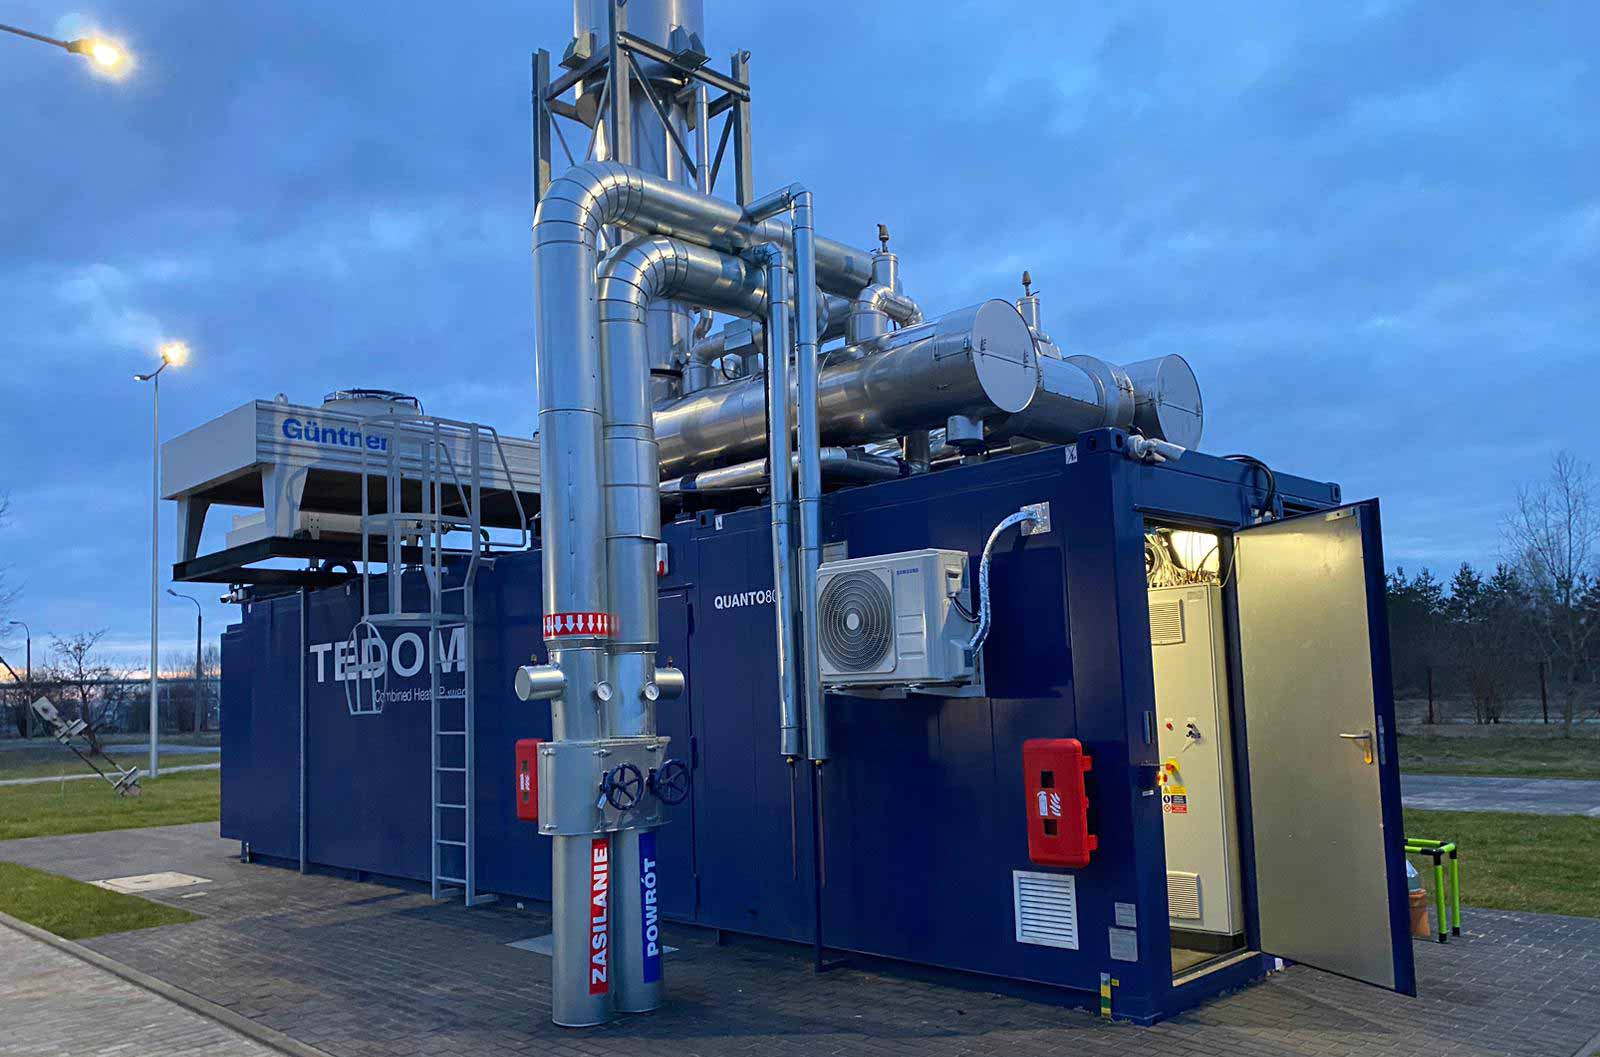 Новый газопоршневой двигатель MWM TCG 3016 V16, поставленный и установленный компанией TEDOM a.s. в контейнерном исполнении «под ключ», работает в режиме  когенерации и производит электроэнергию и тепло для городской энергосистемы.